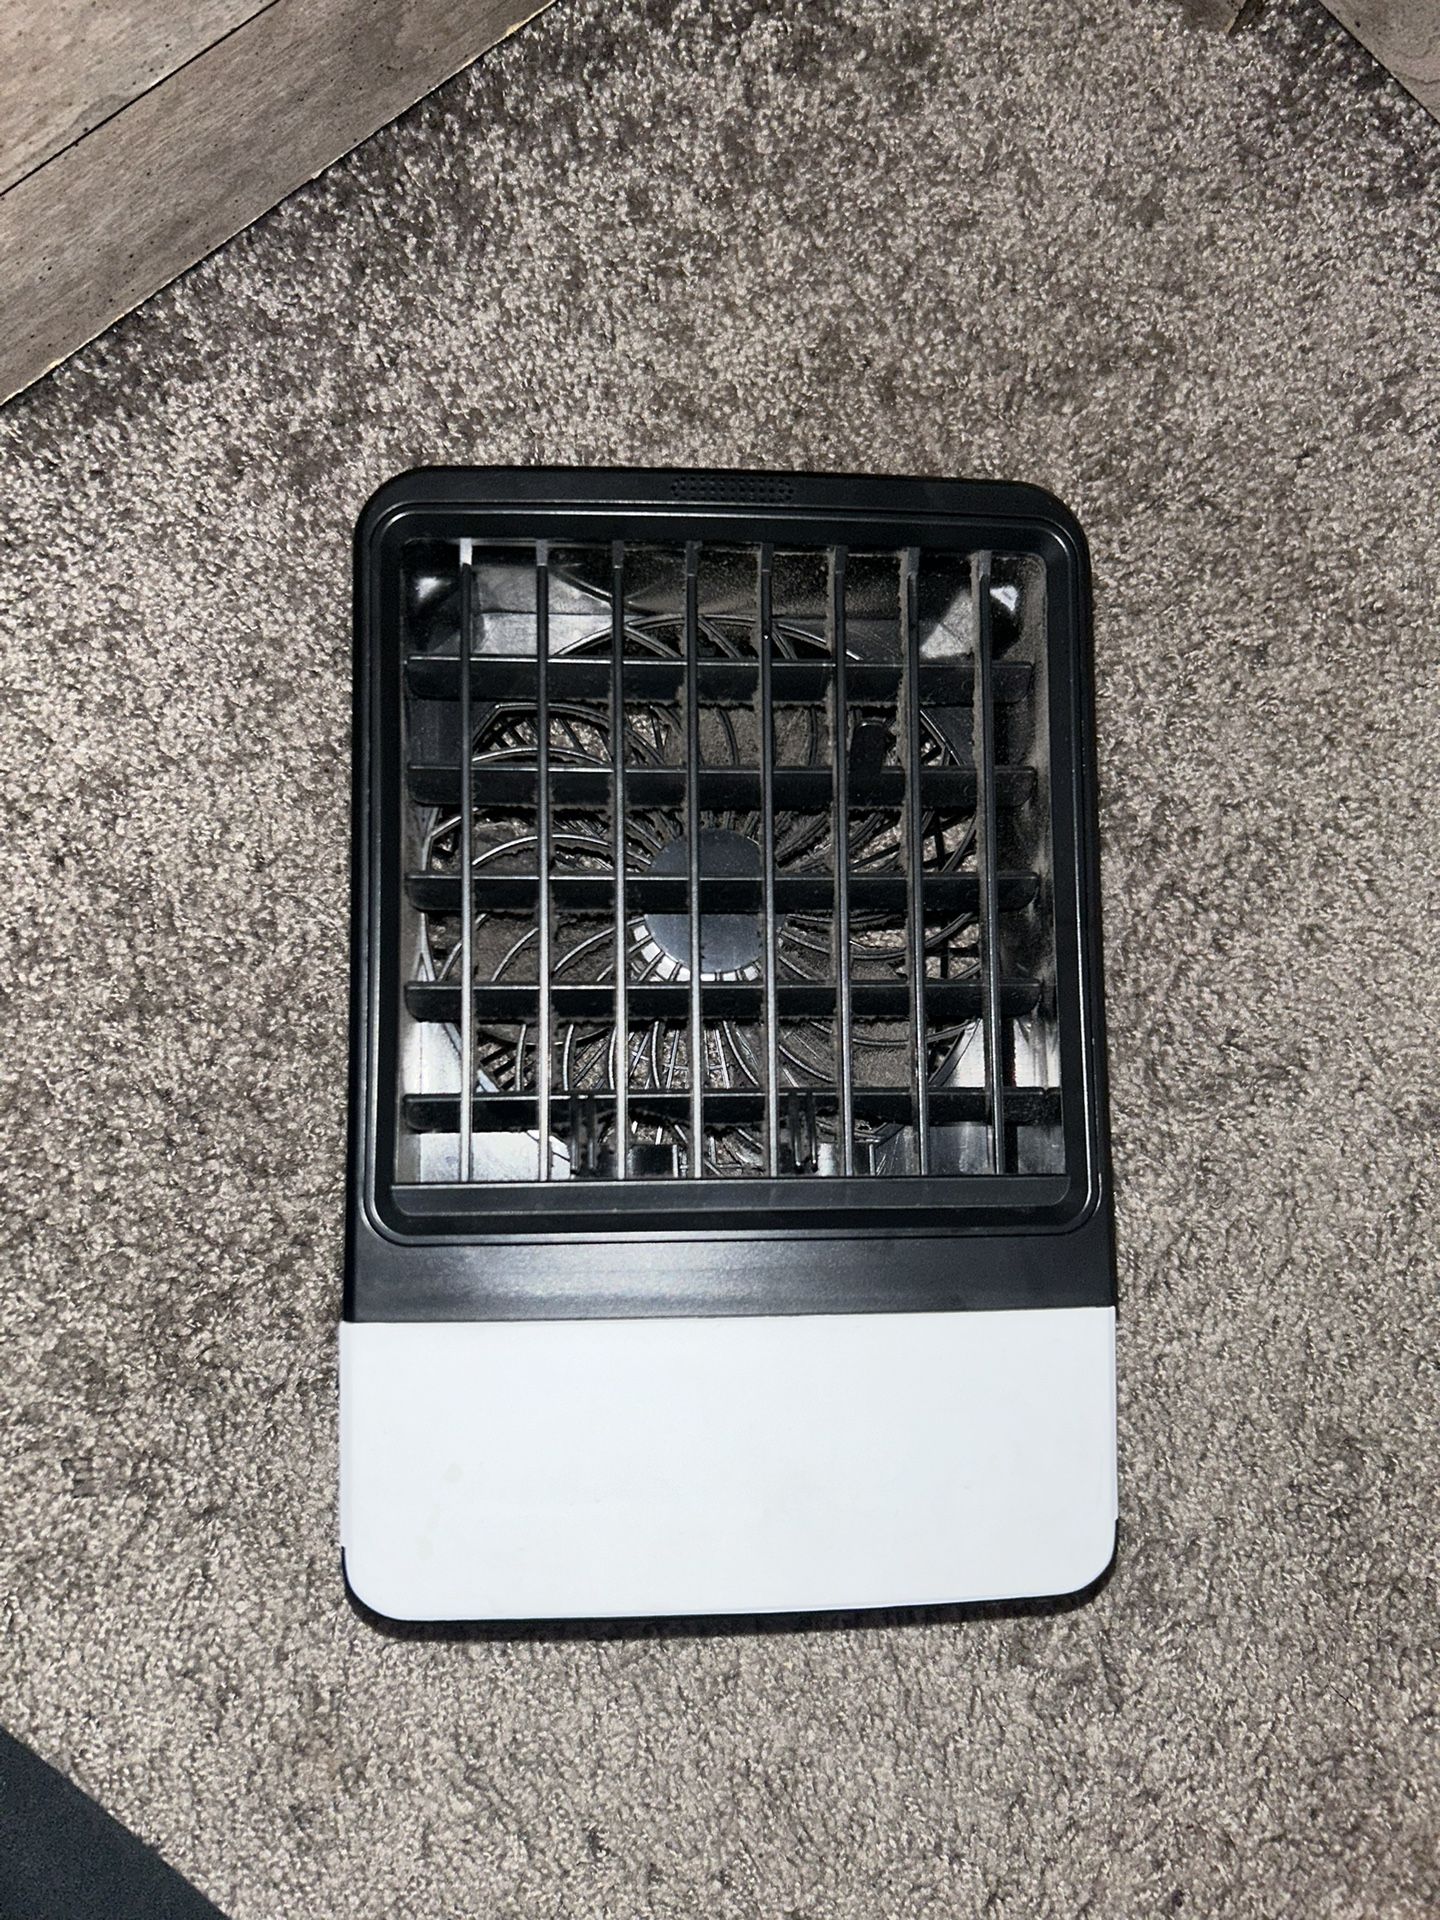 Small Portable Air Conditioner Fan